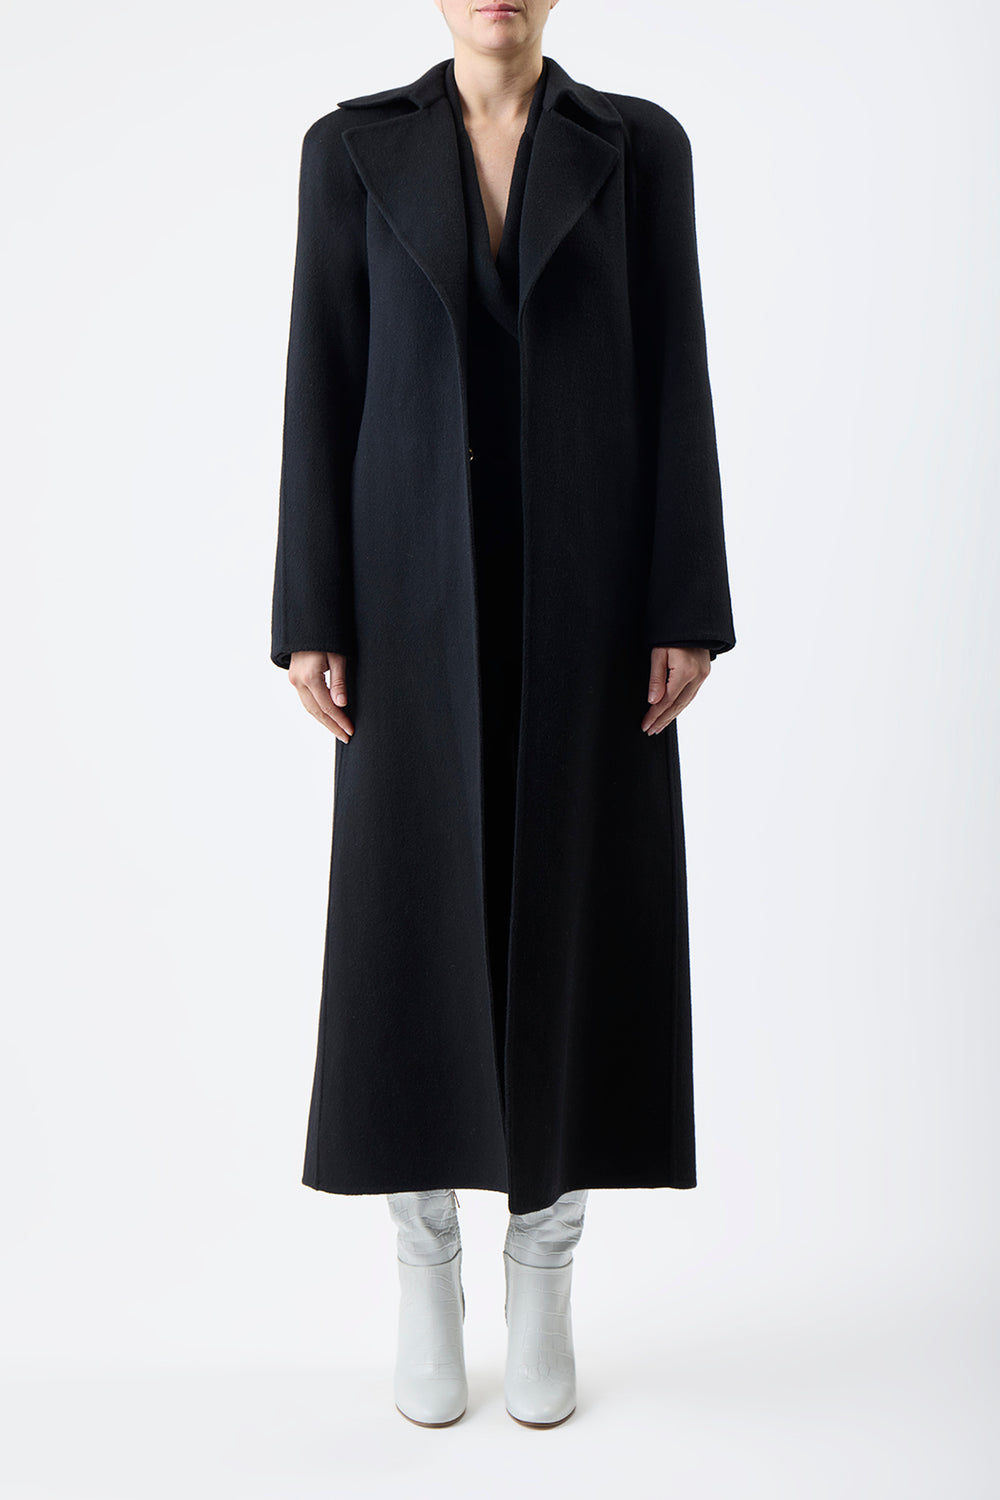 安い販促 deres Gabriella/long oval coat | celeb.nude.com